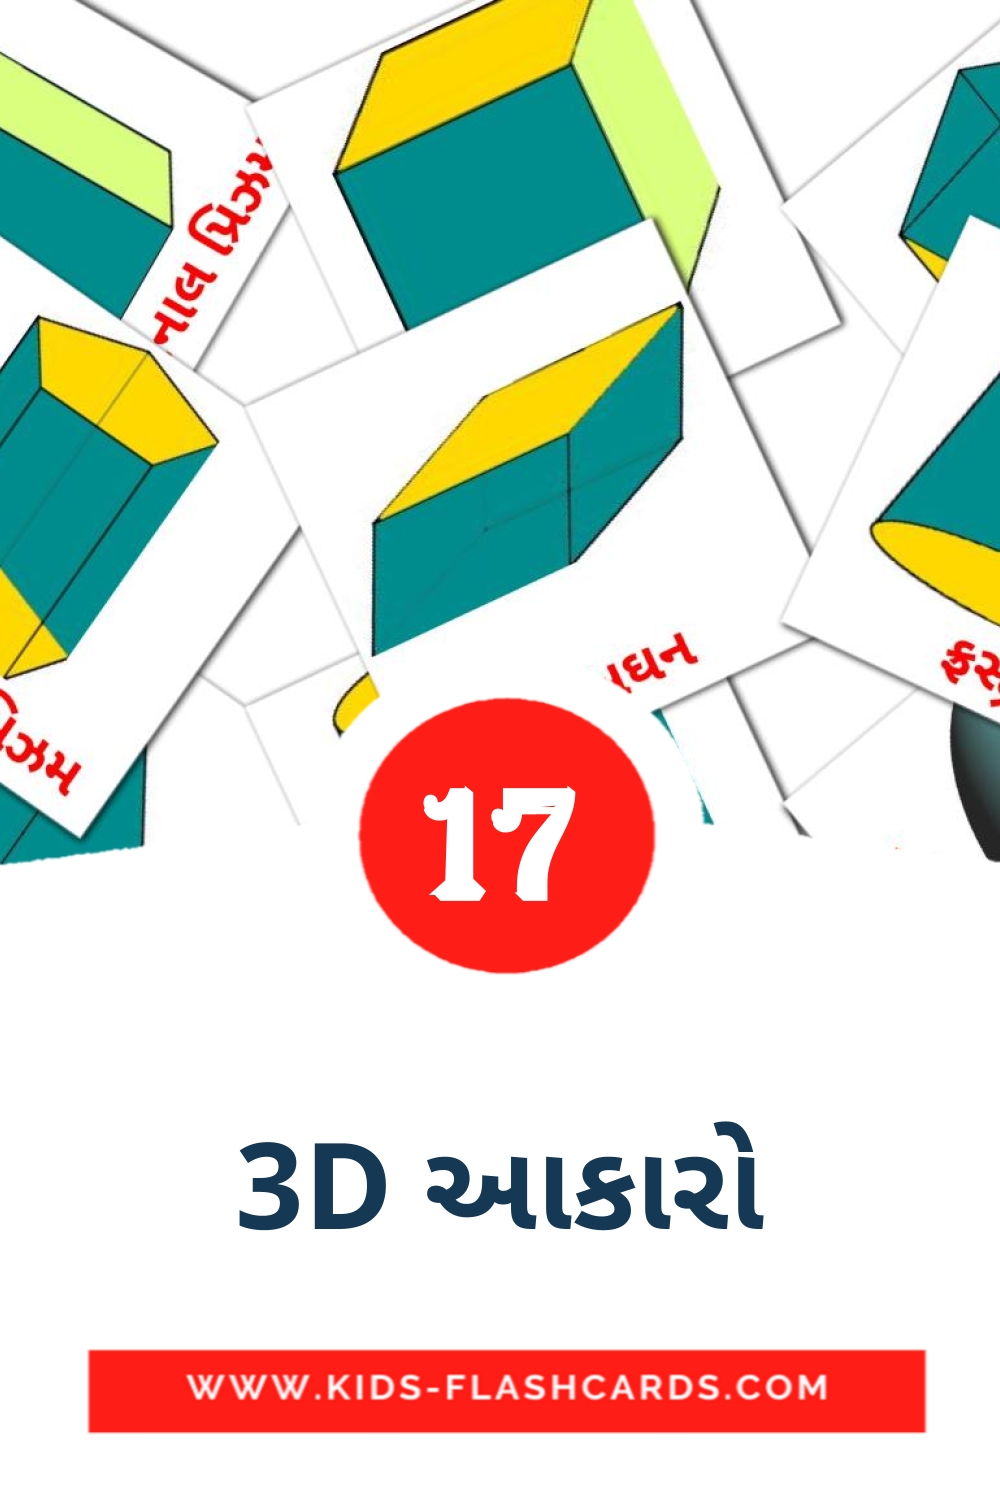 17 tarjetas didacticas de 3D આકારો para el jardín de infancia en gujarati